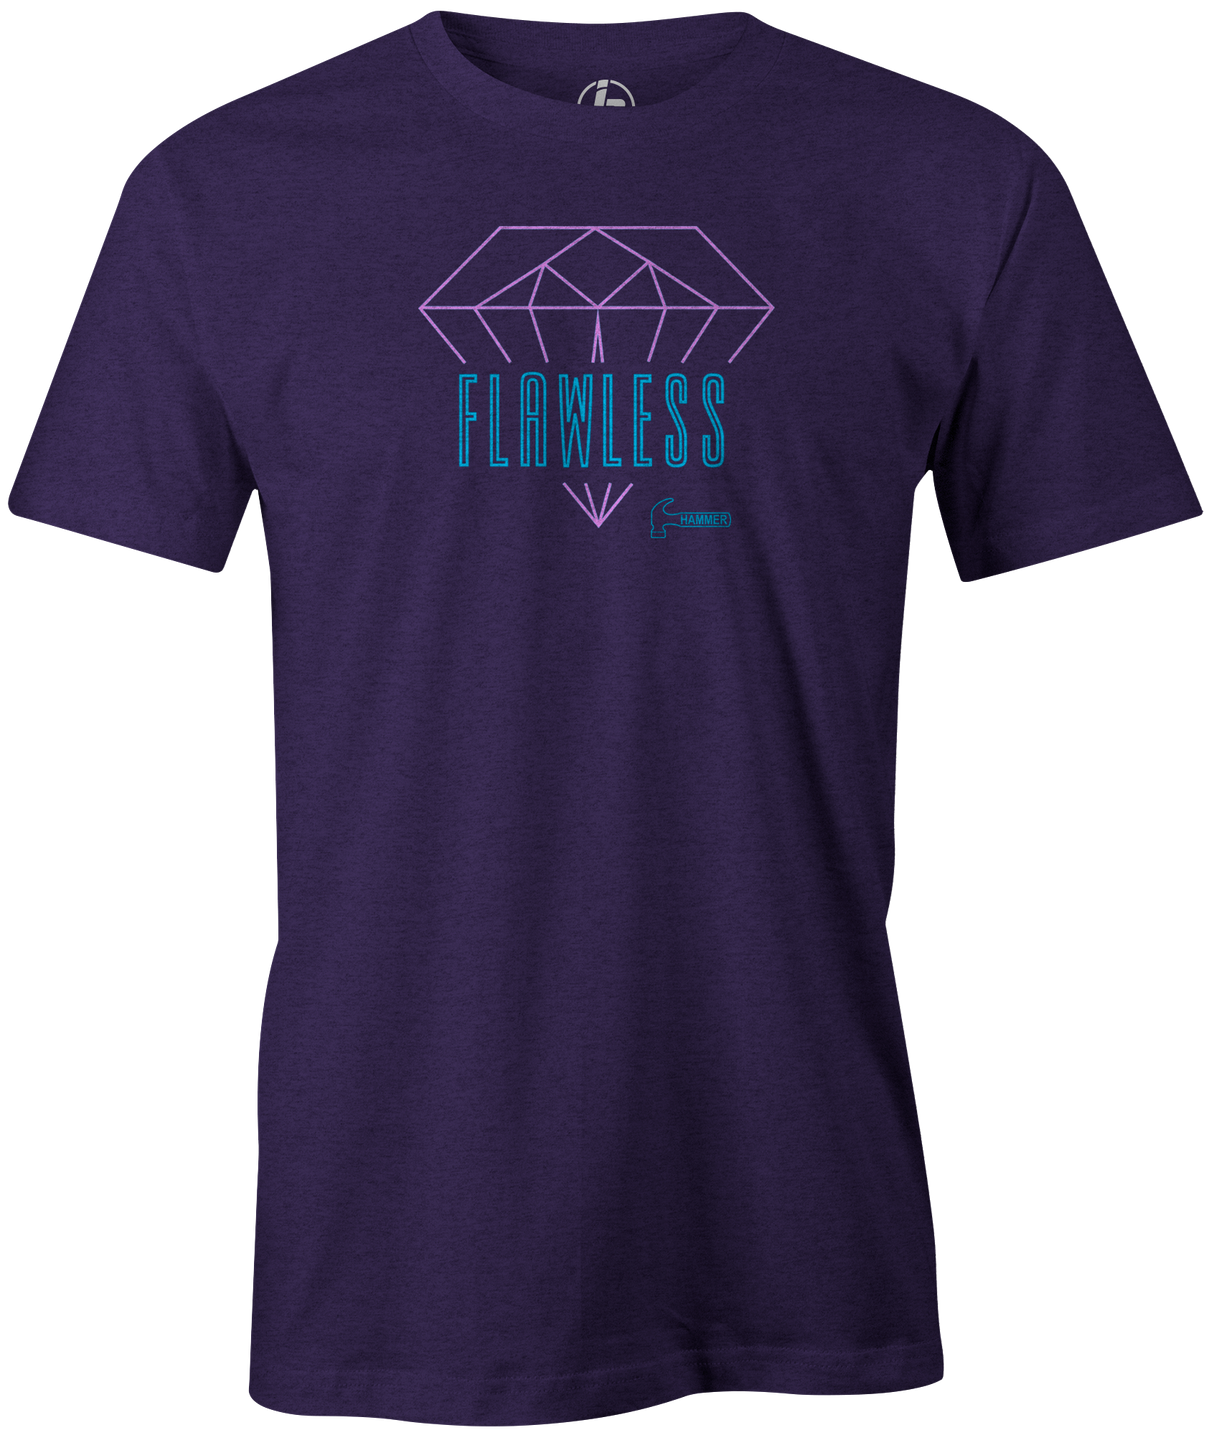 Flawless Men's T-shirt, Purple, Bowling, tshirt, tee shirt, tee-shirt, tee, bowling ball, hammer bowling, hammer.